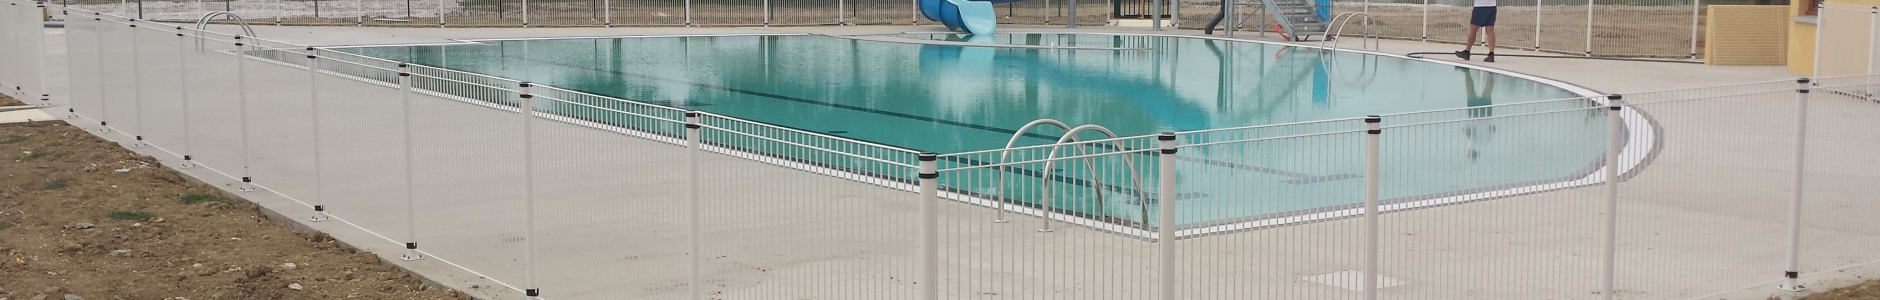 Création d’une piscine publique